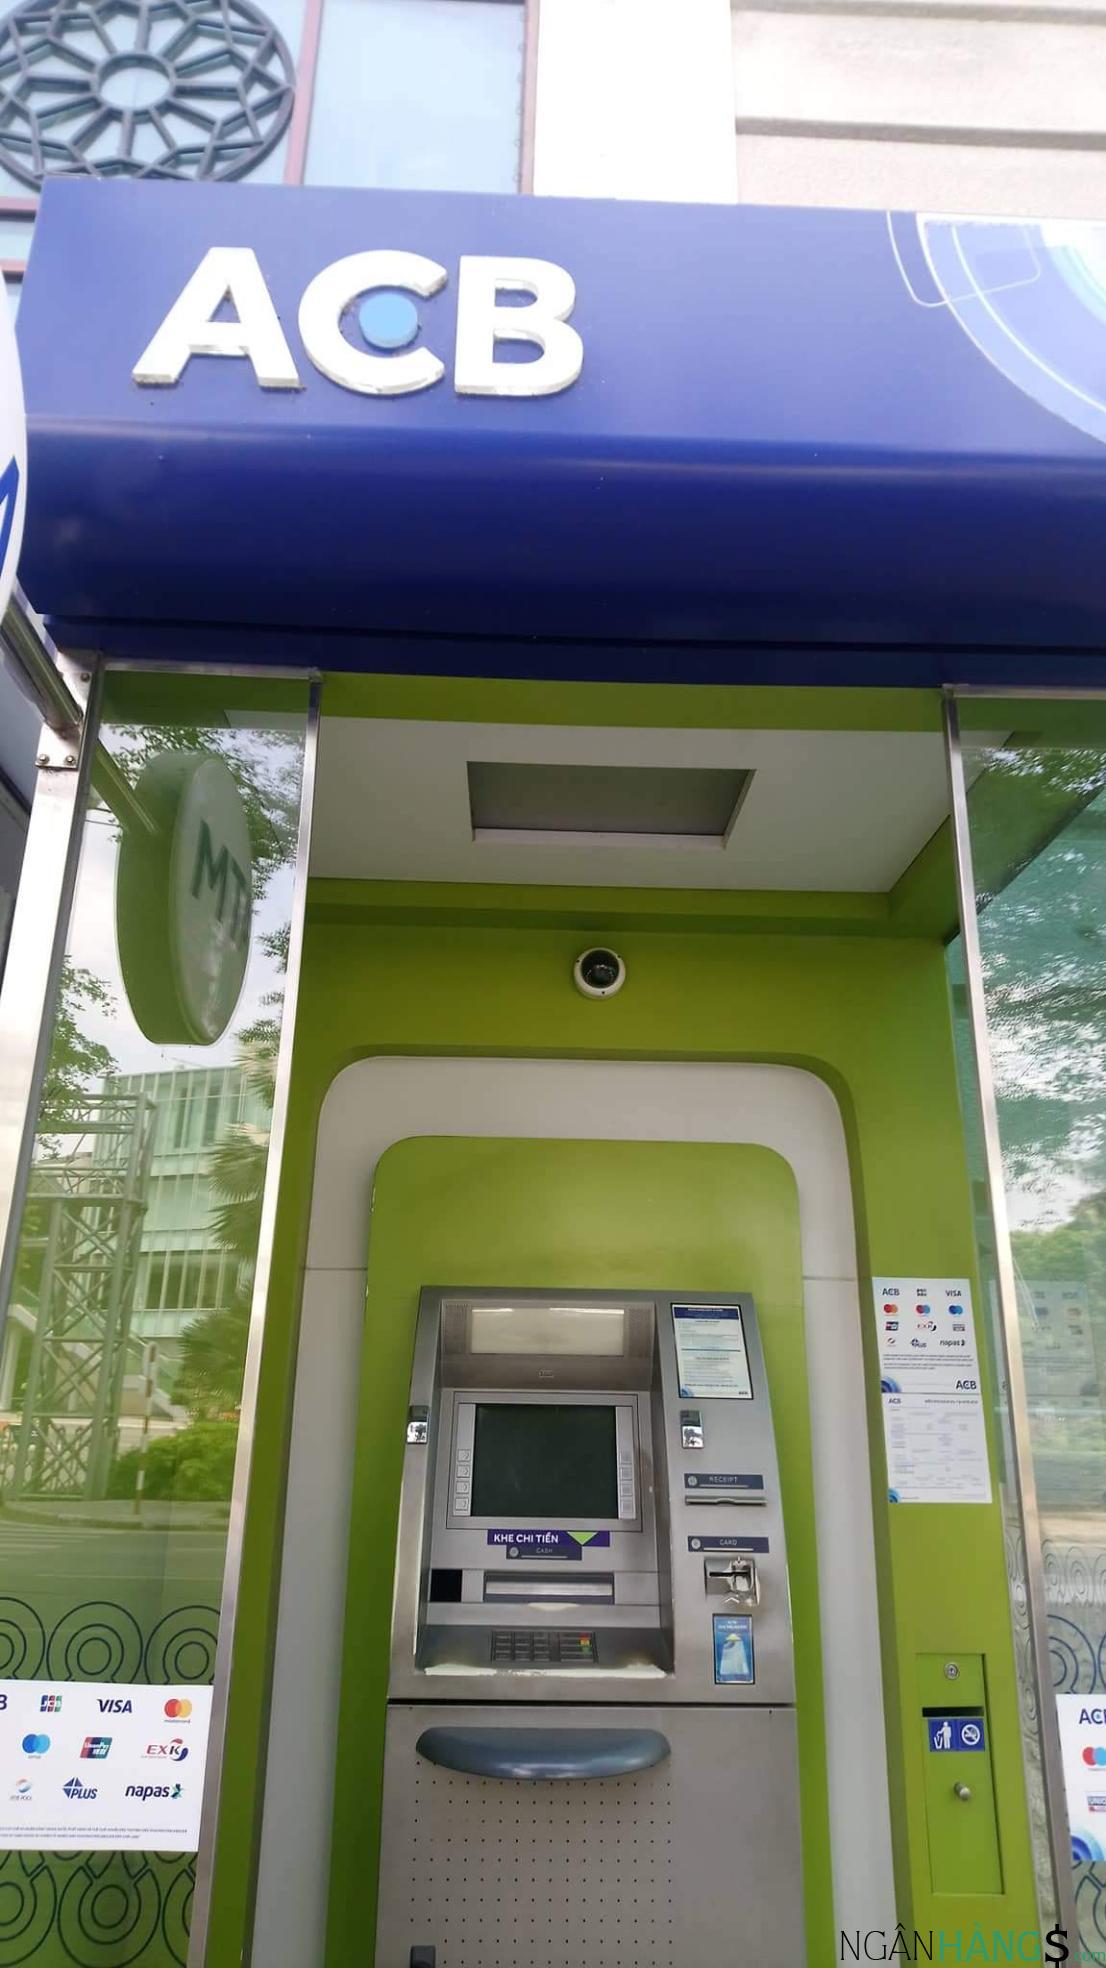 Ảnh Cây ATM ngân hàng Á Châu ACB Trần Đại Nghĩa 1